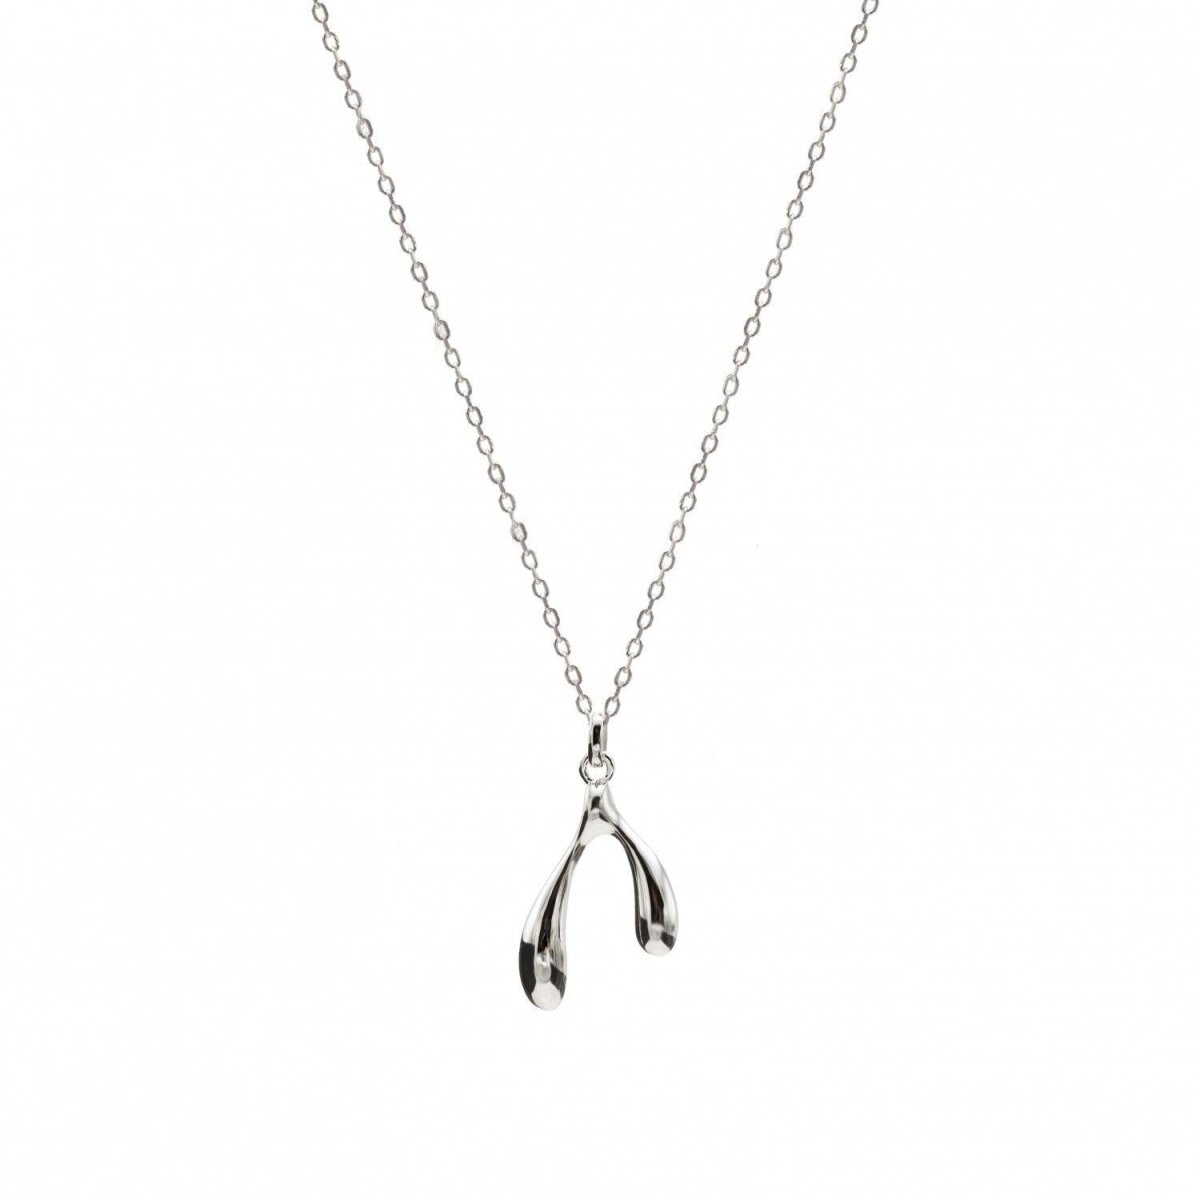 Necklaces - Original silver necklaces woman double teardrop design